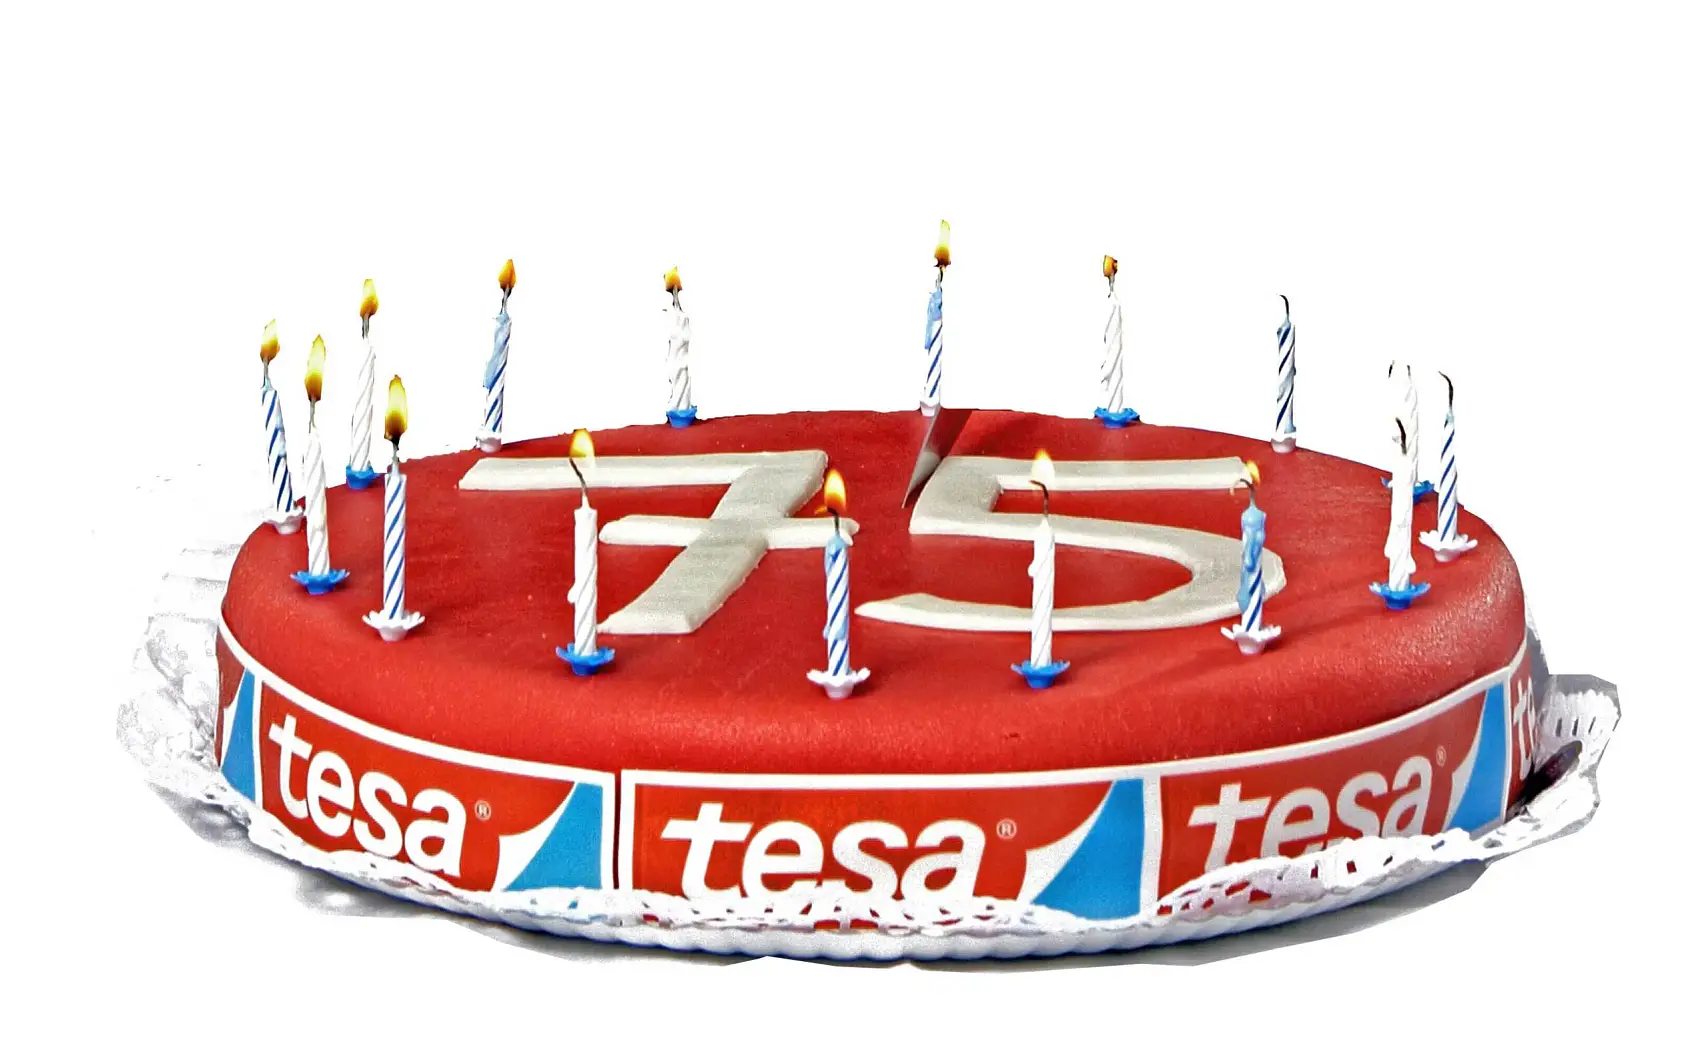 tesa a célébré son 75ème anniversaire en 2011